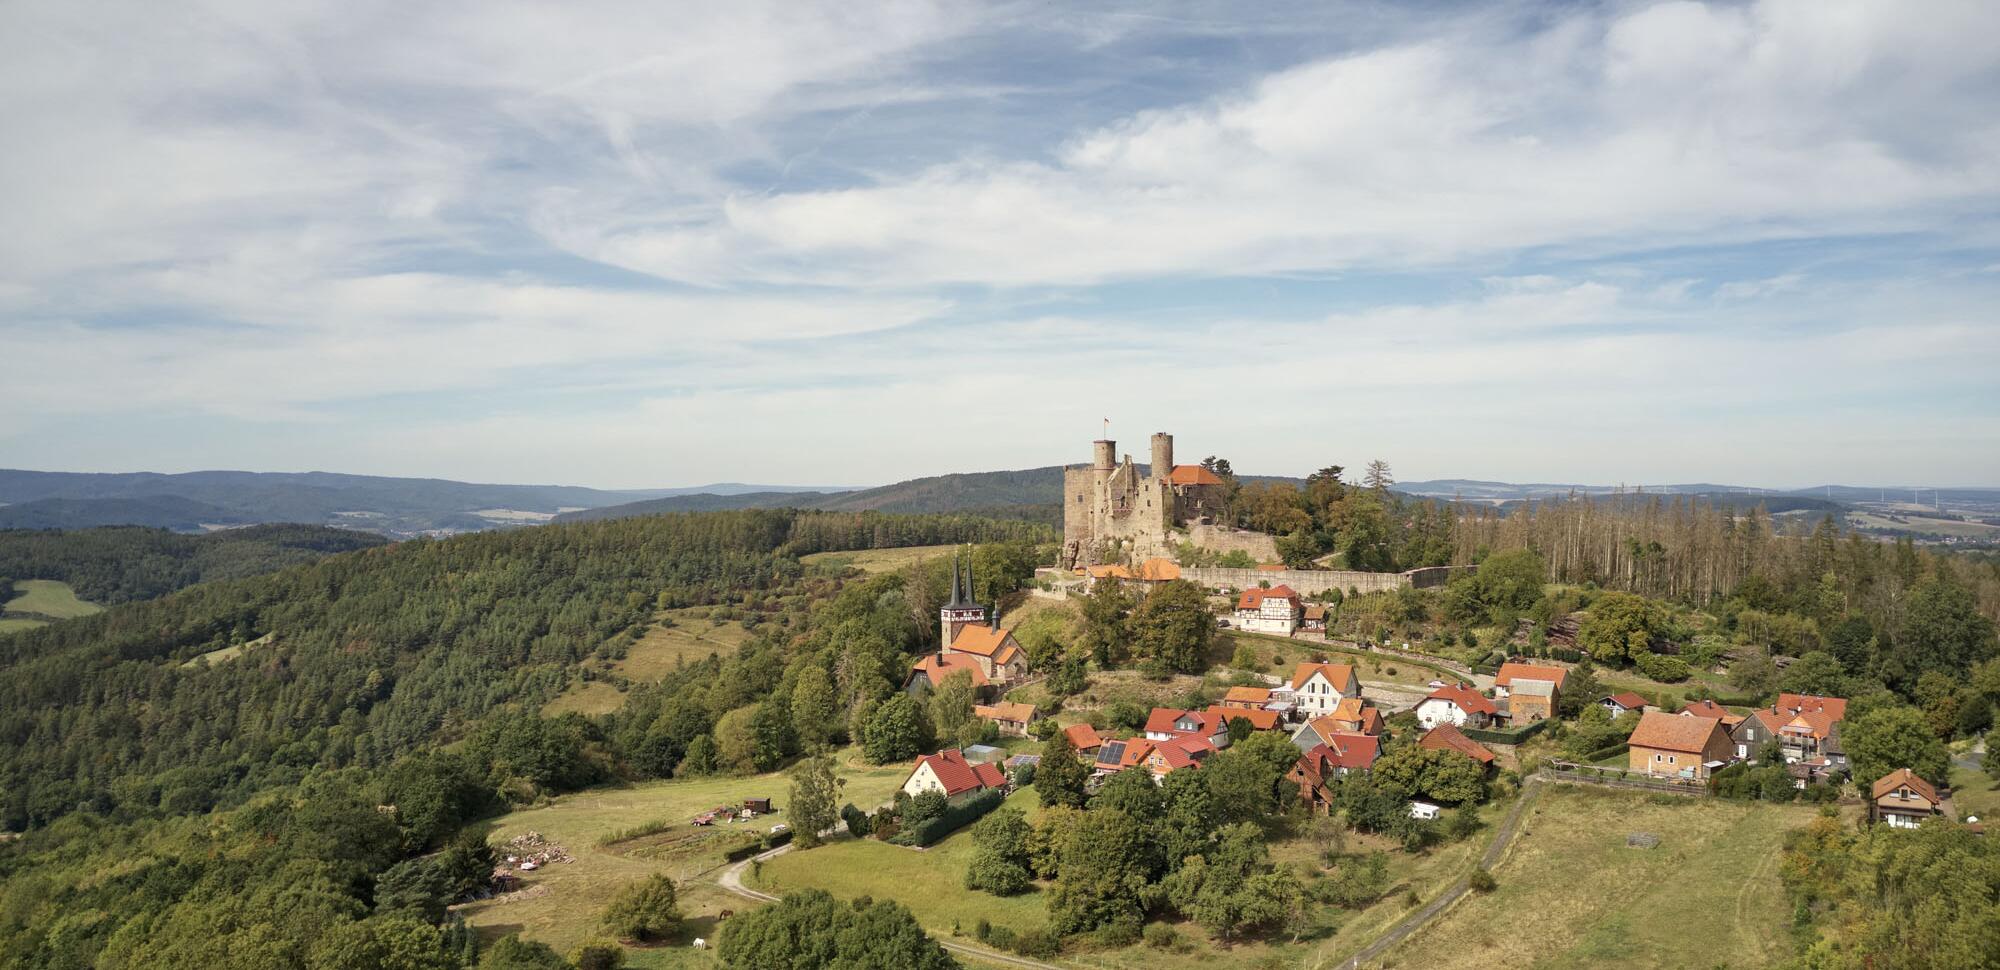 Blick auf das Dorf Bornhagen und die Burgruine Hanstein